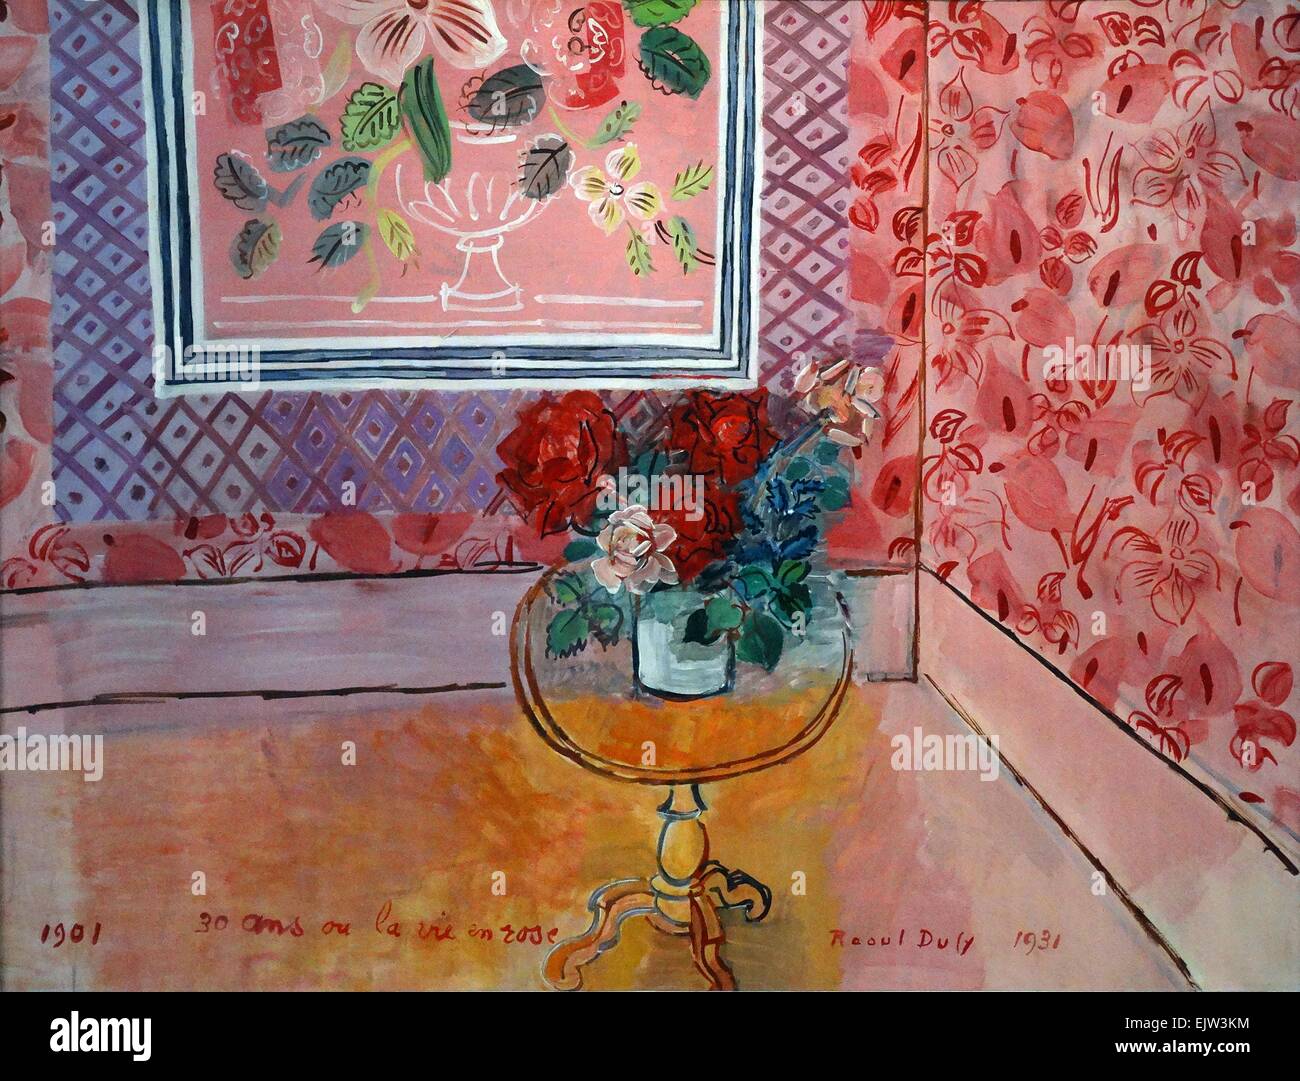 Trente Ans Ou La Vie En rose von Raoul Dufy (1877-1953). Öl auf Leinwand, 1931. Dufy war ein französischer fauvistischen Maler, der einen farbenfrohen, dekorativen Stil entwickelt, der schnell in Mode kam. Stockfoto